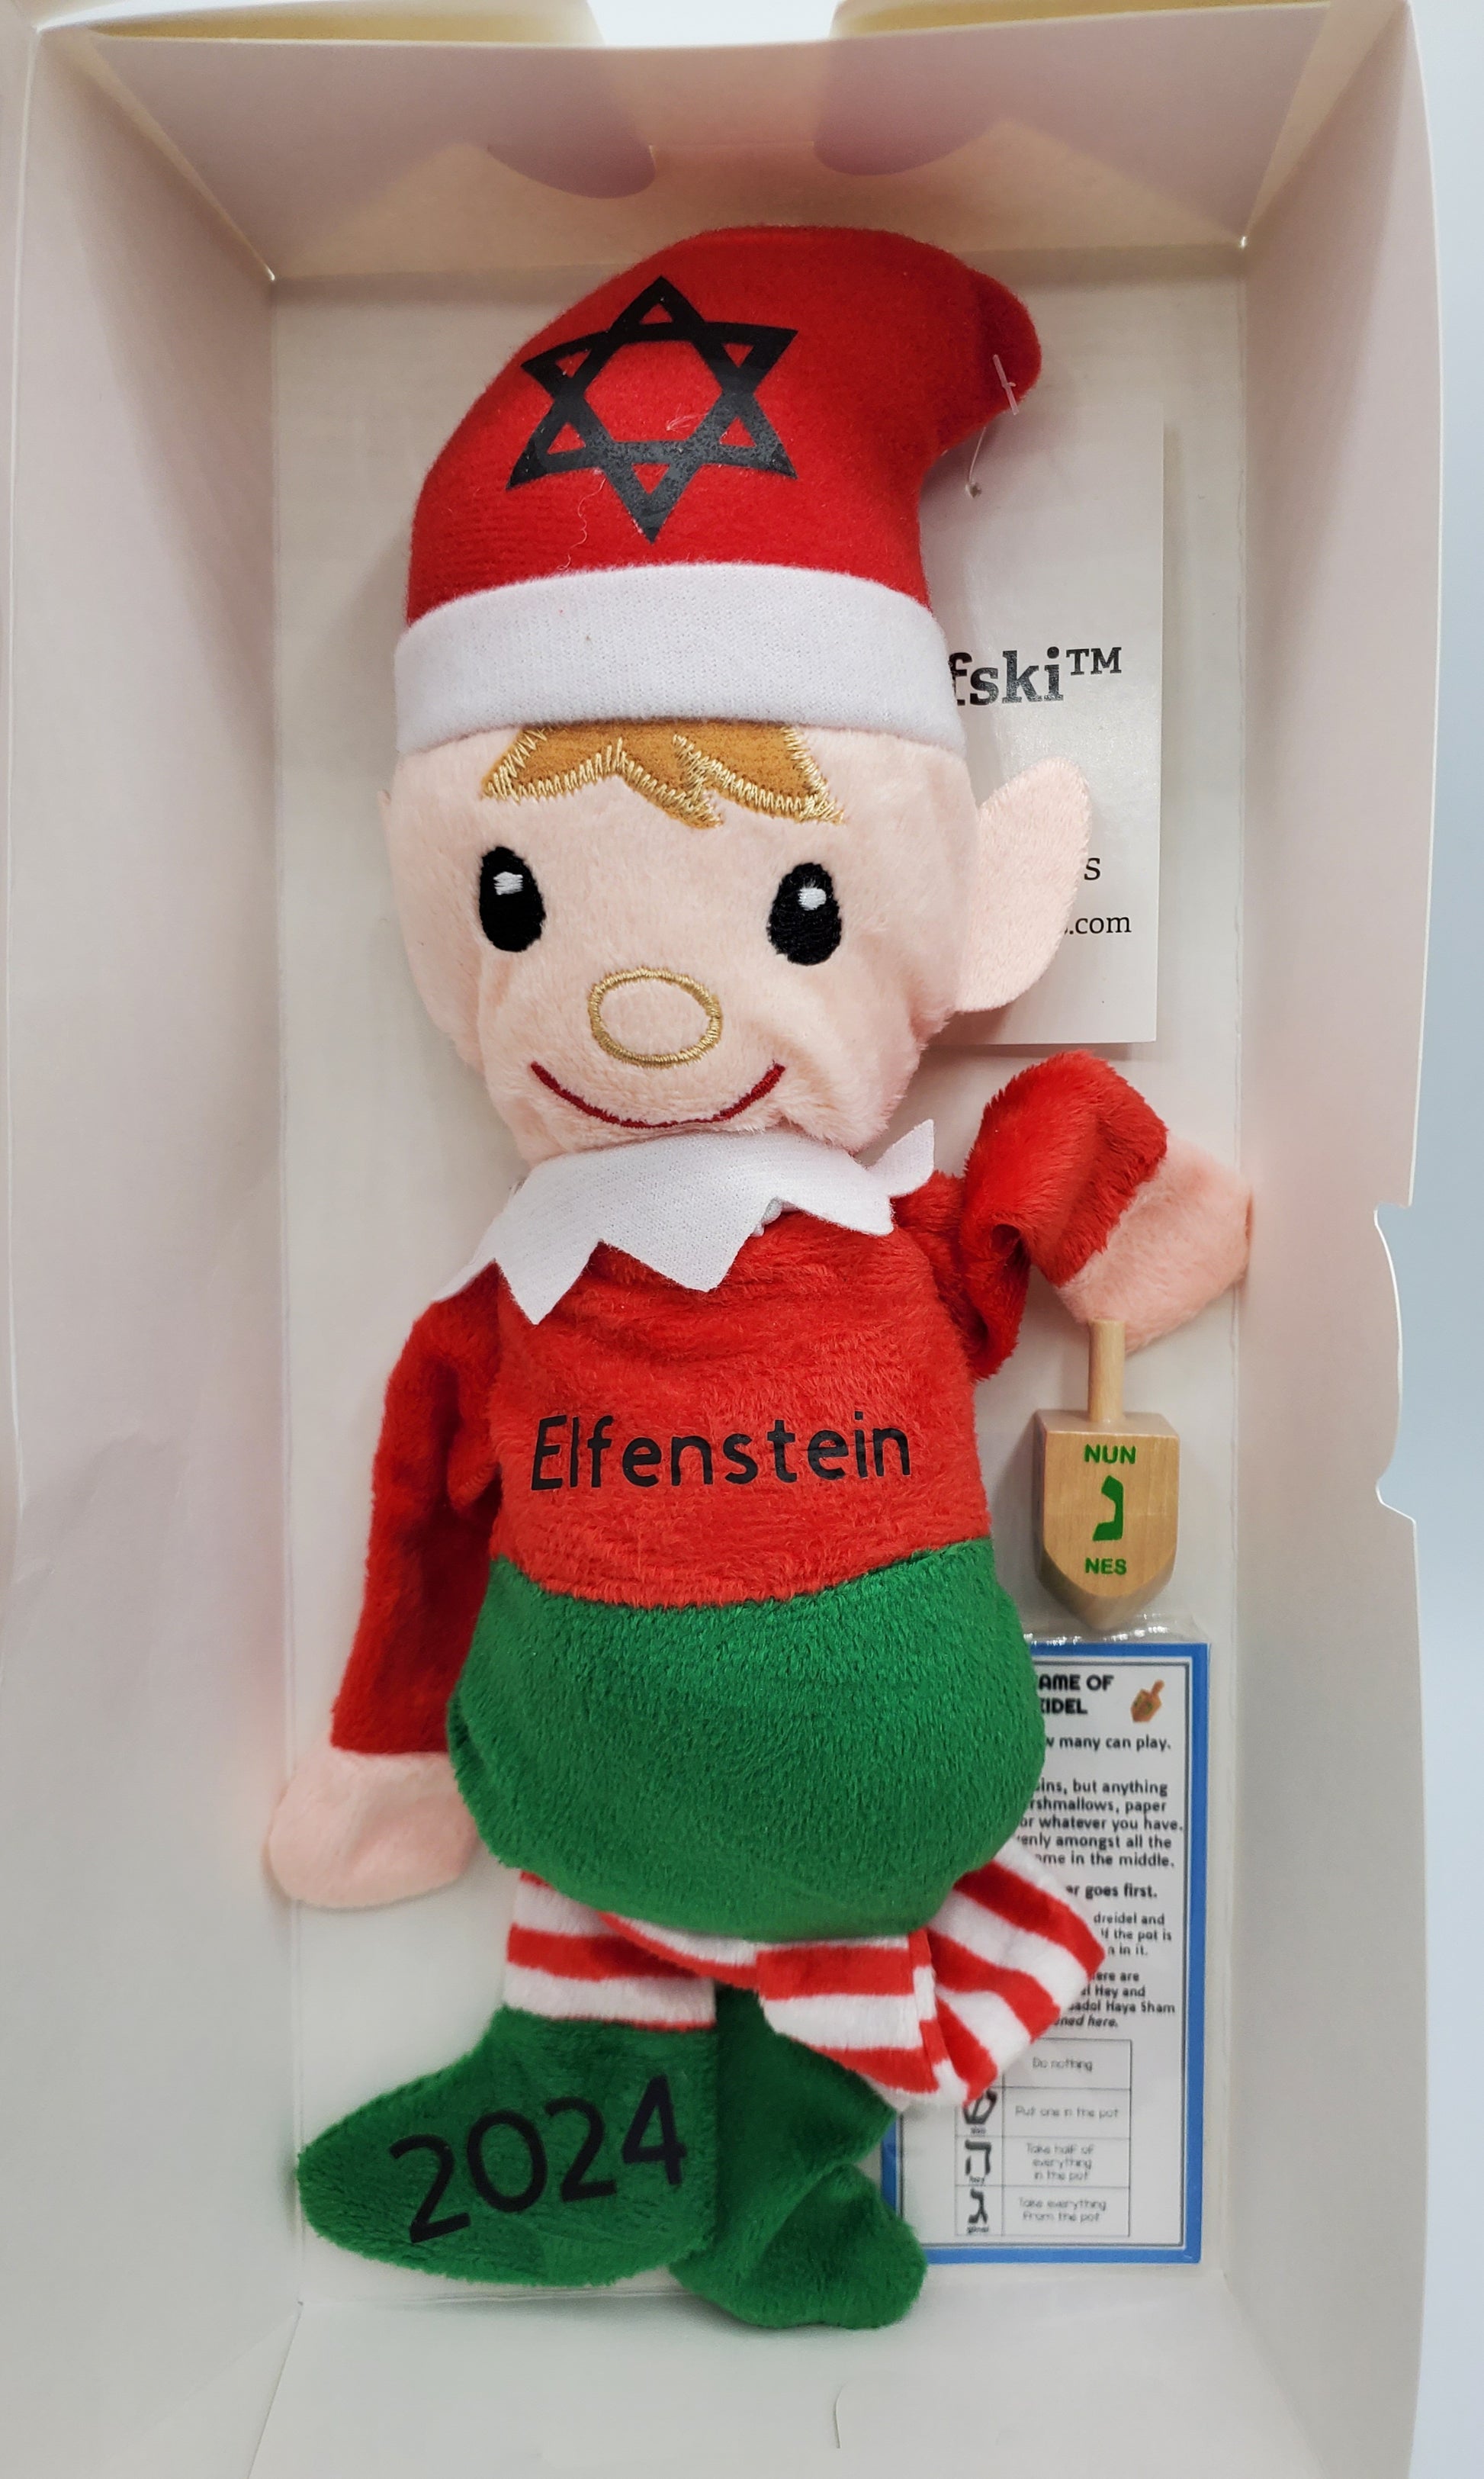 Elfenstein in box